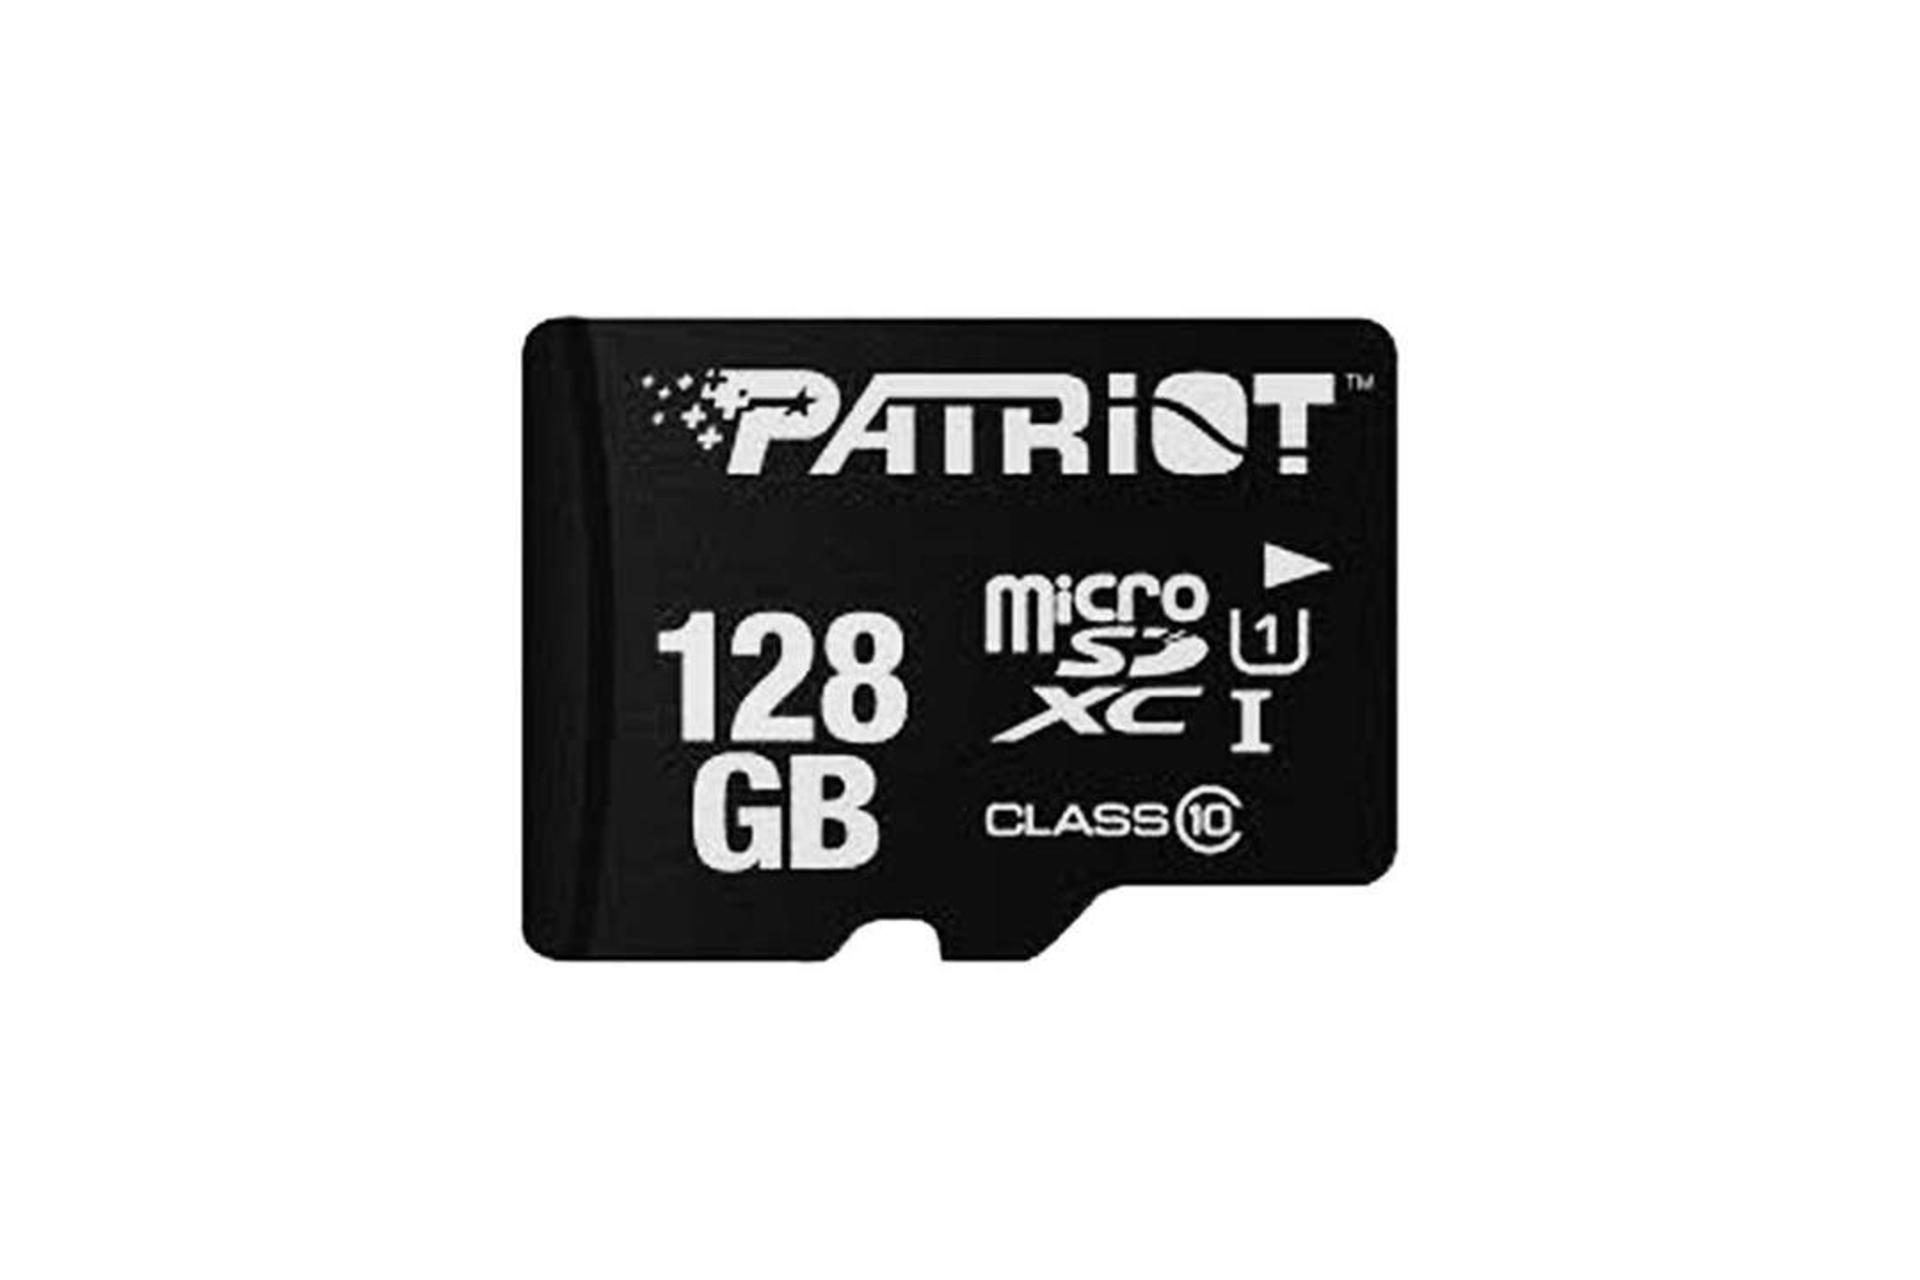 Patriot LX microSDXC Class 10 UHS-I U1 128GB